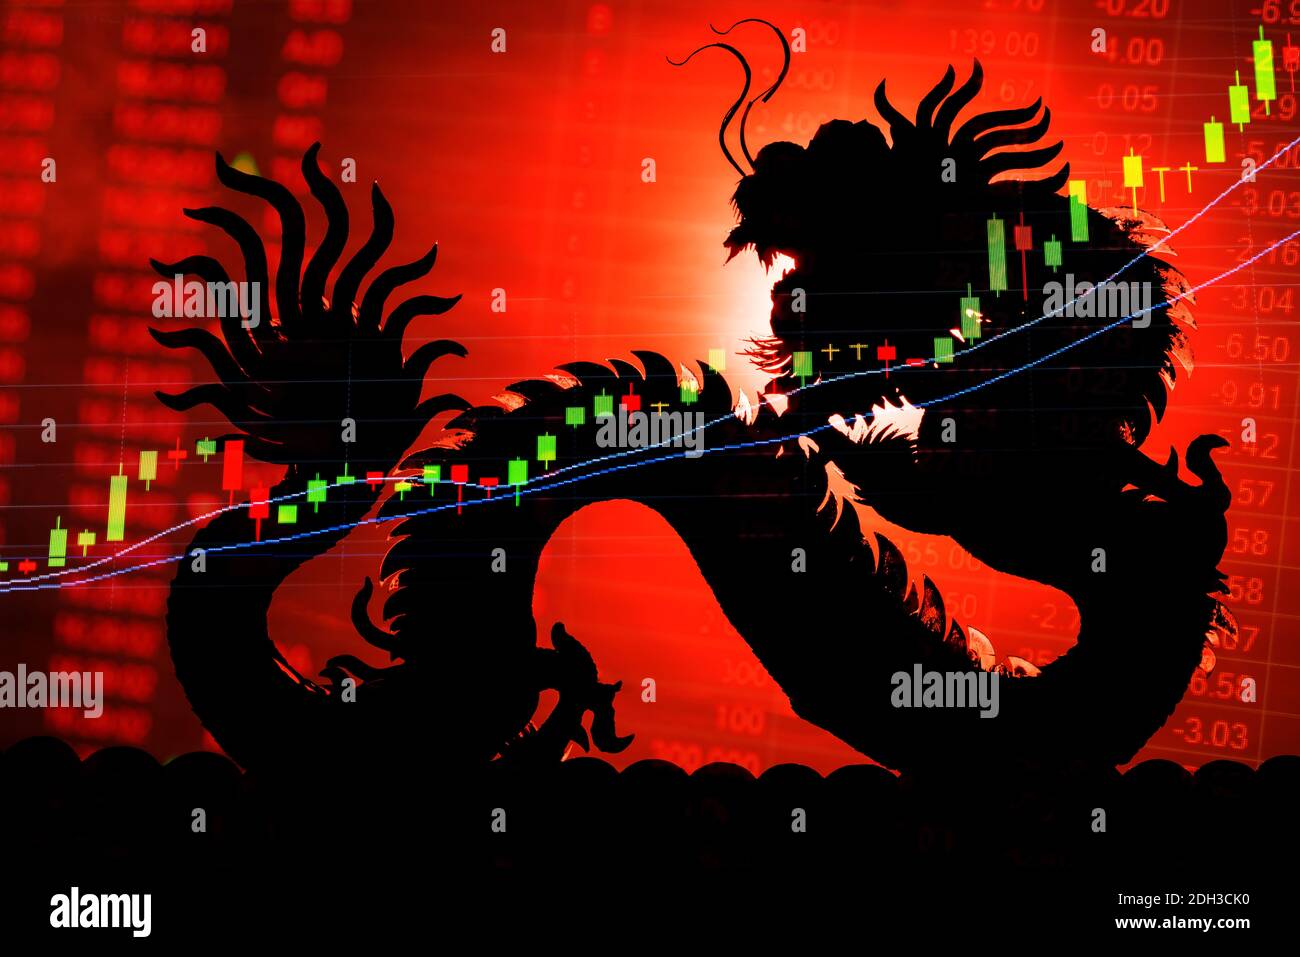 Anzeige des Kursdiagramms der chinesischen Börse. Dragon als Hintergrund bedeutet ein Konzept der chinesischen Wirtschaft. Die Grafik der Börse zeigt die Trendökonomie. Preis für roten Text Stockfoto